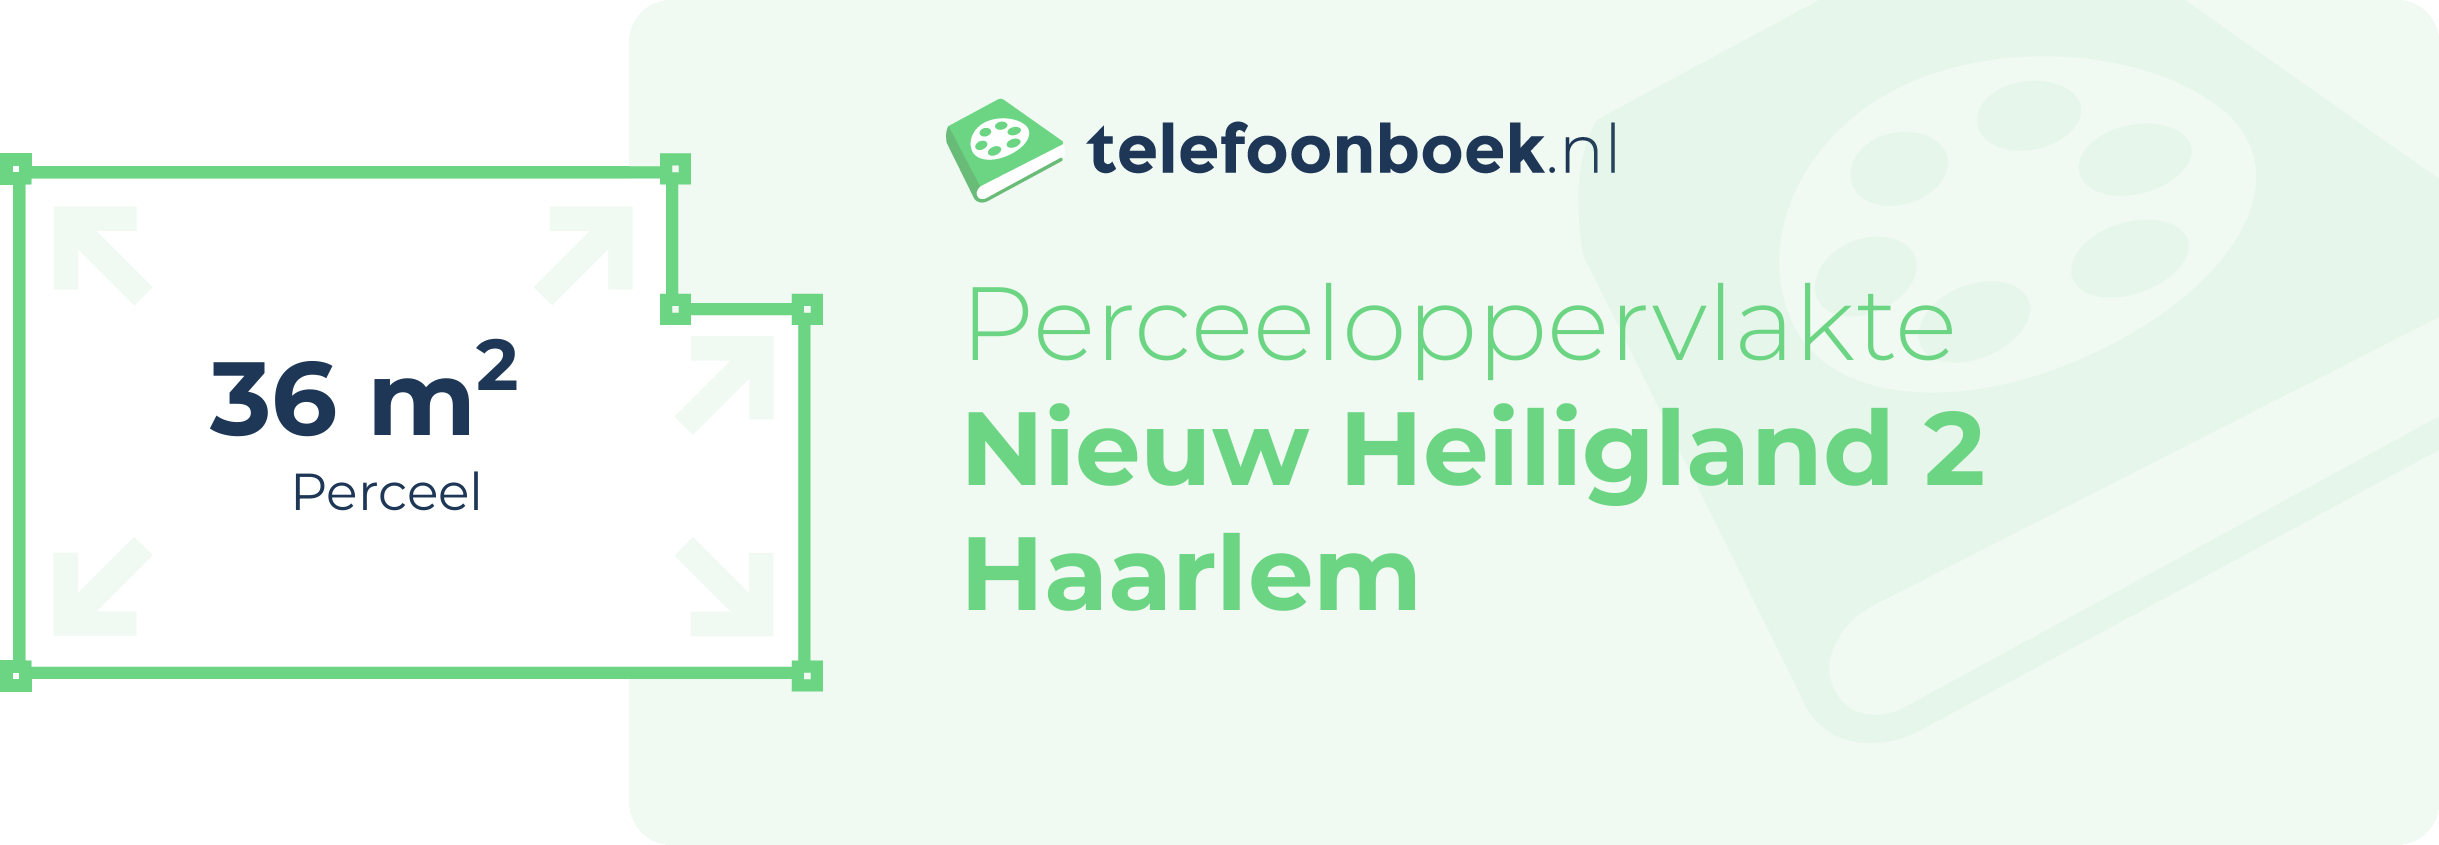 Perceeloppervlakte Nieuw Heiligland 2 Haarlem